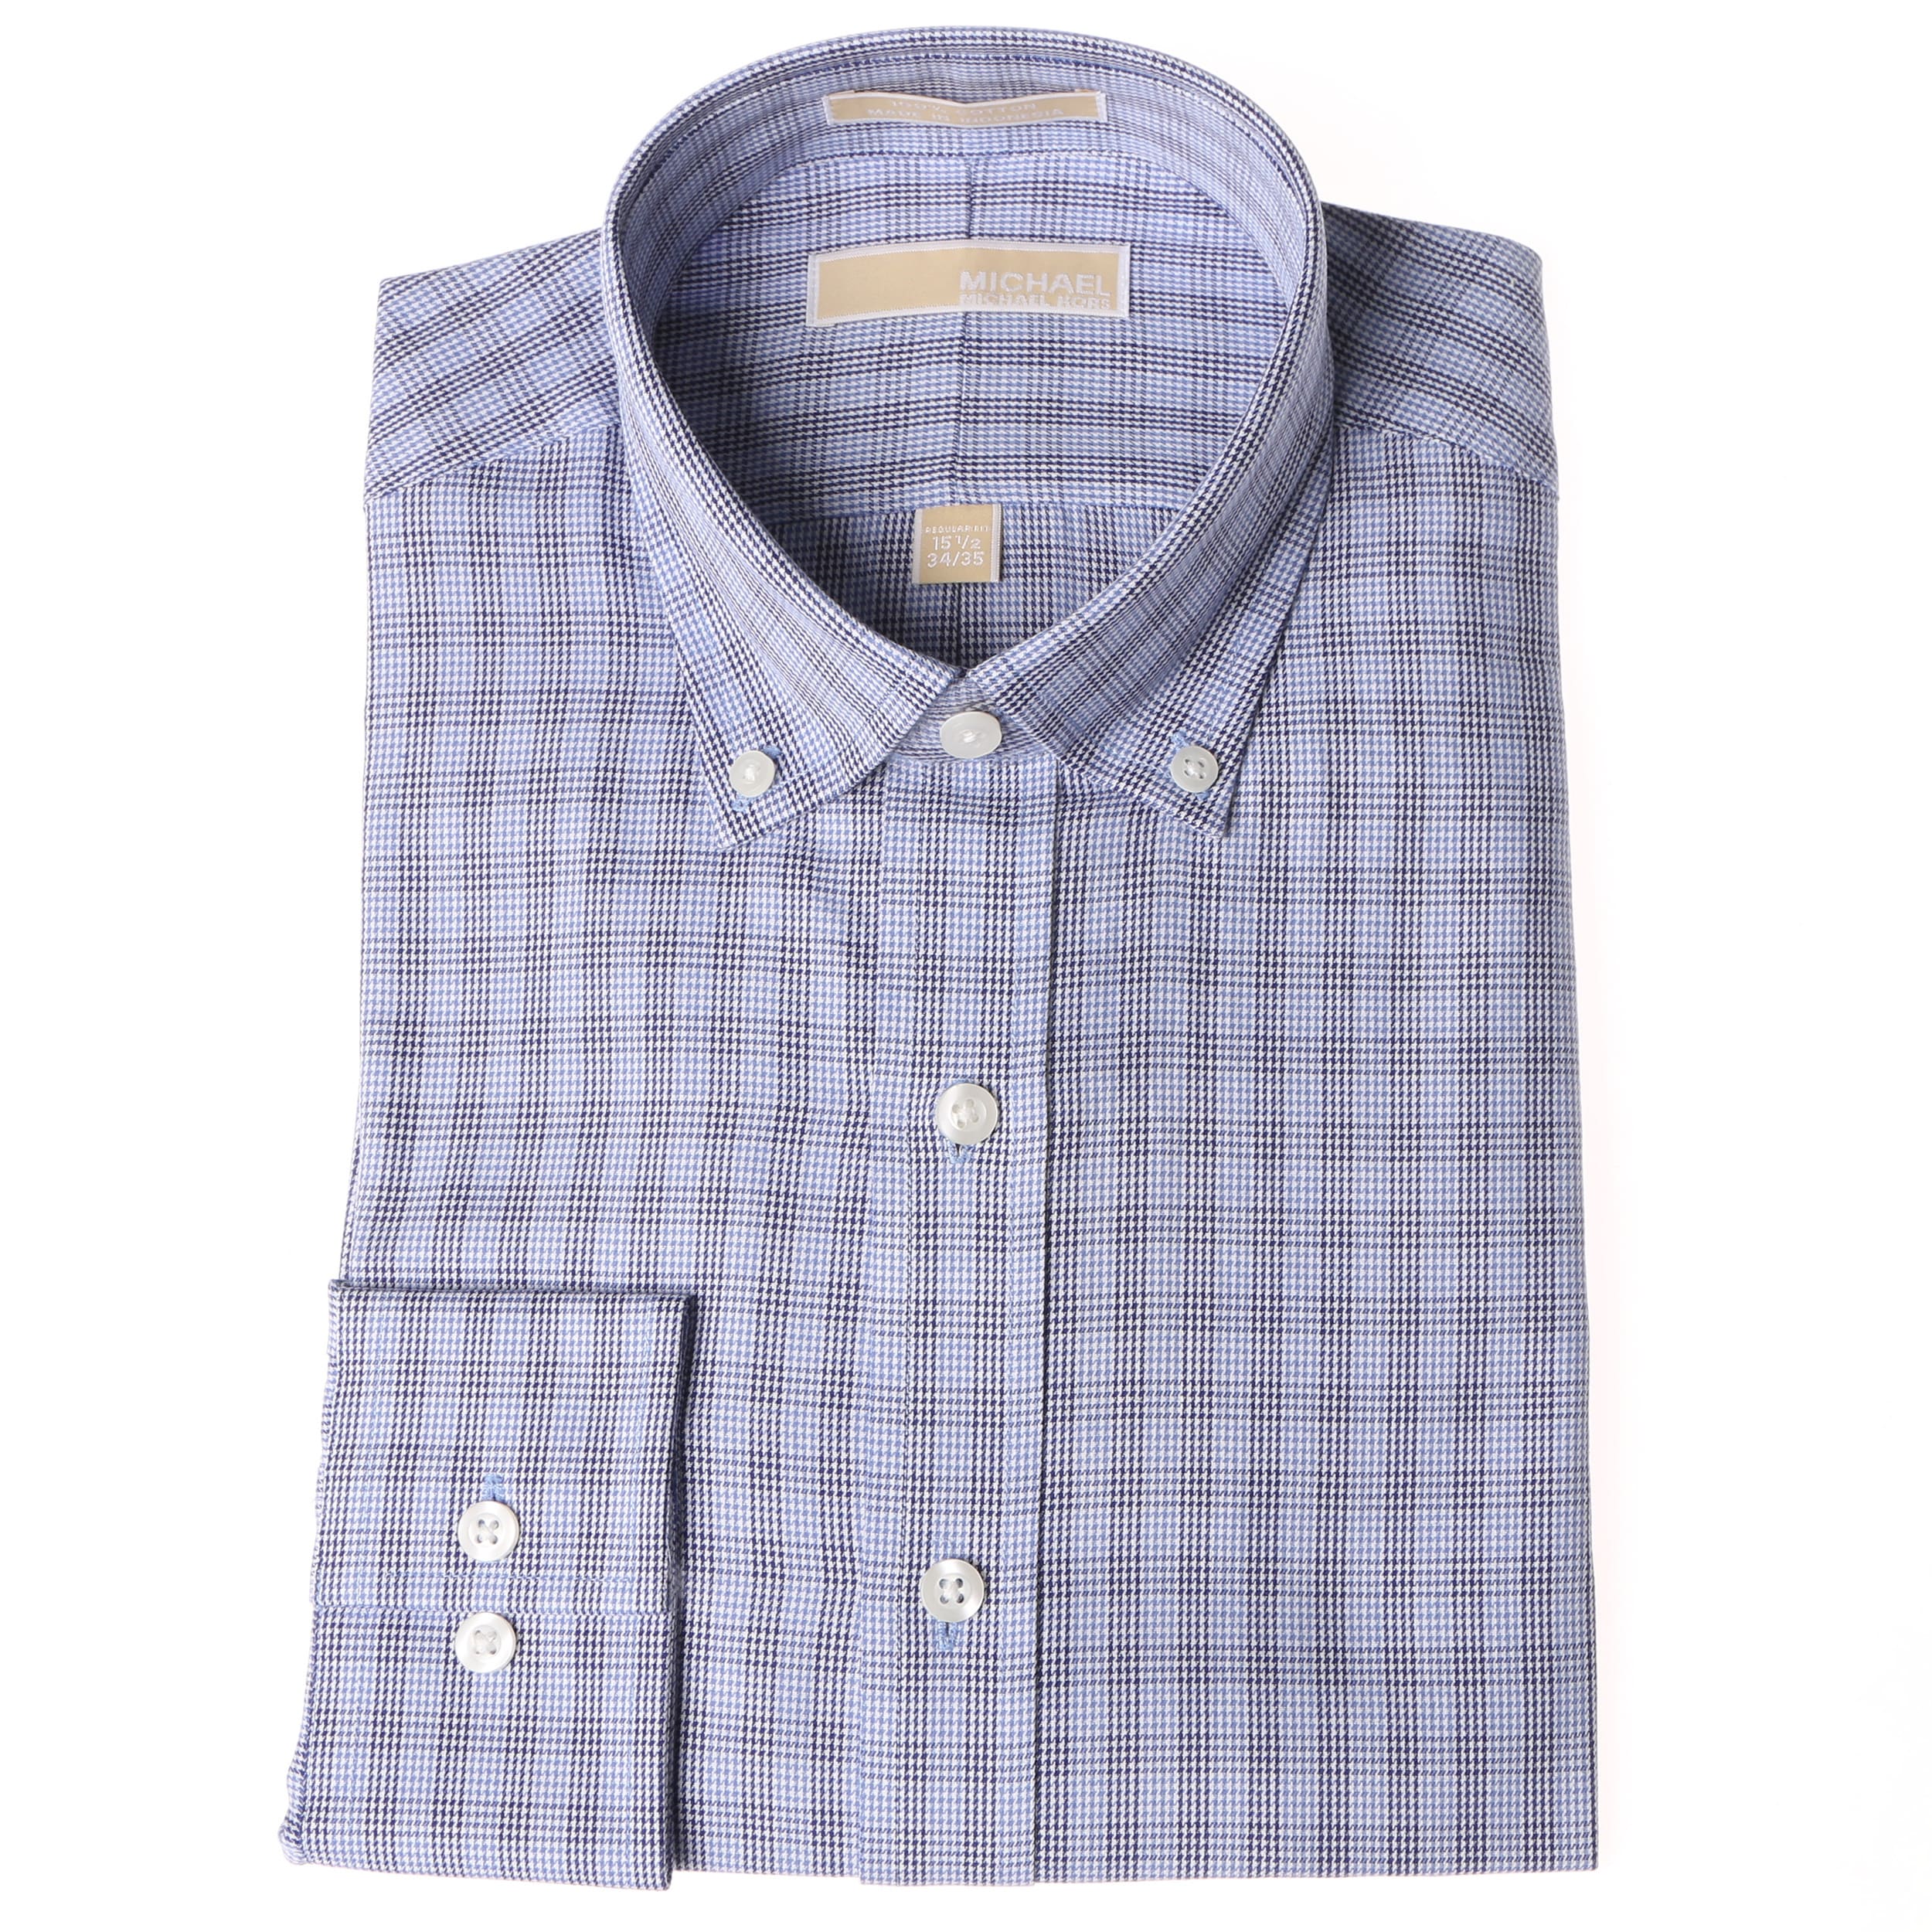 Shop Michael Kors Men's Ocean Blue Checkered Dress Shirt - Free ...